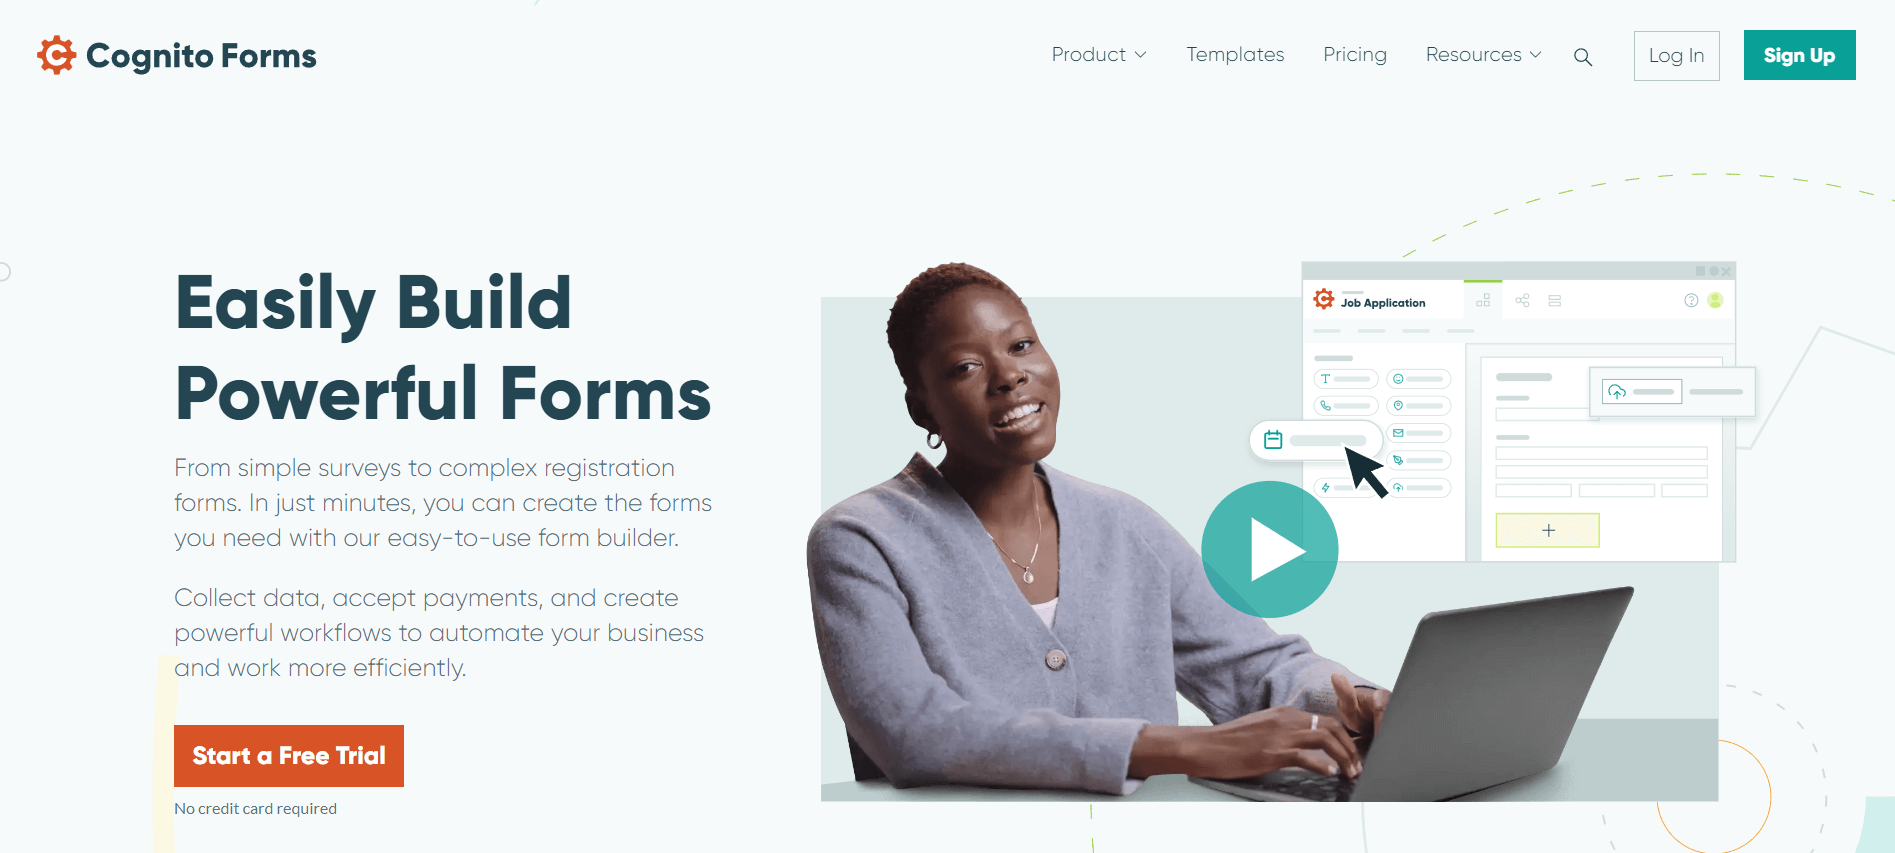 Outil pour créer un formulaire en ligne : Cognito Forms